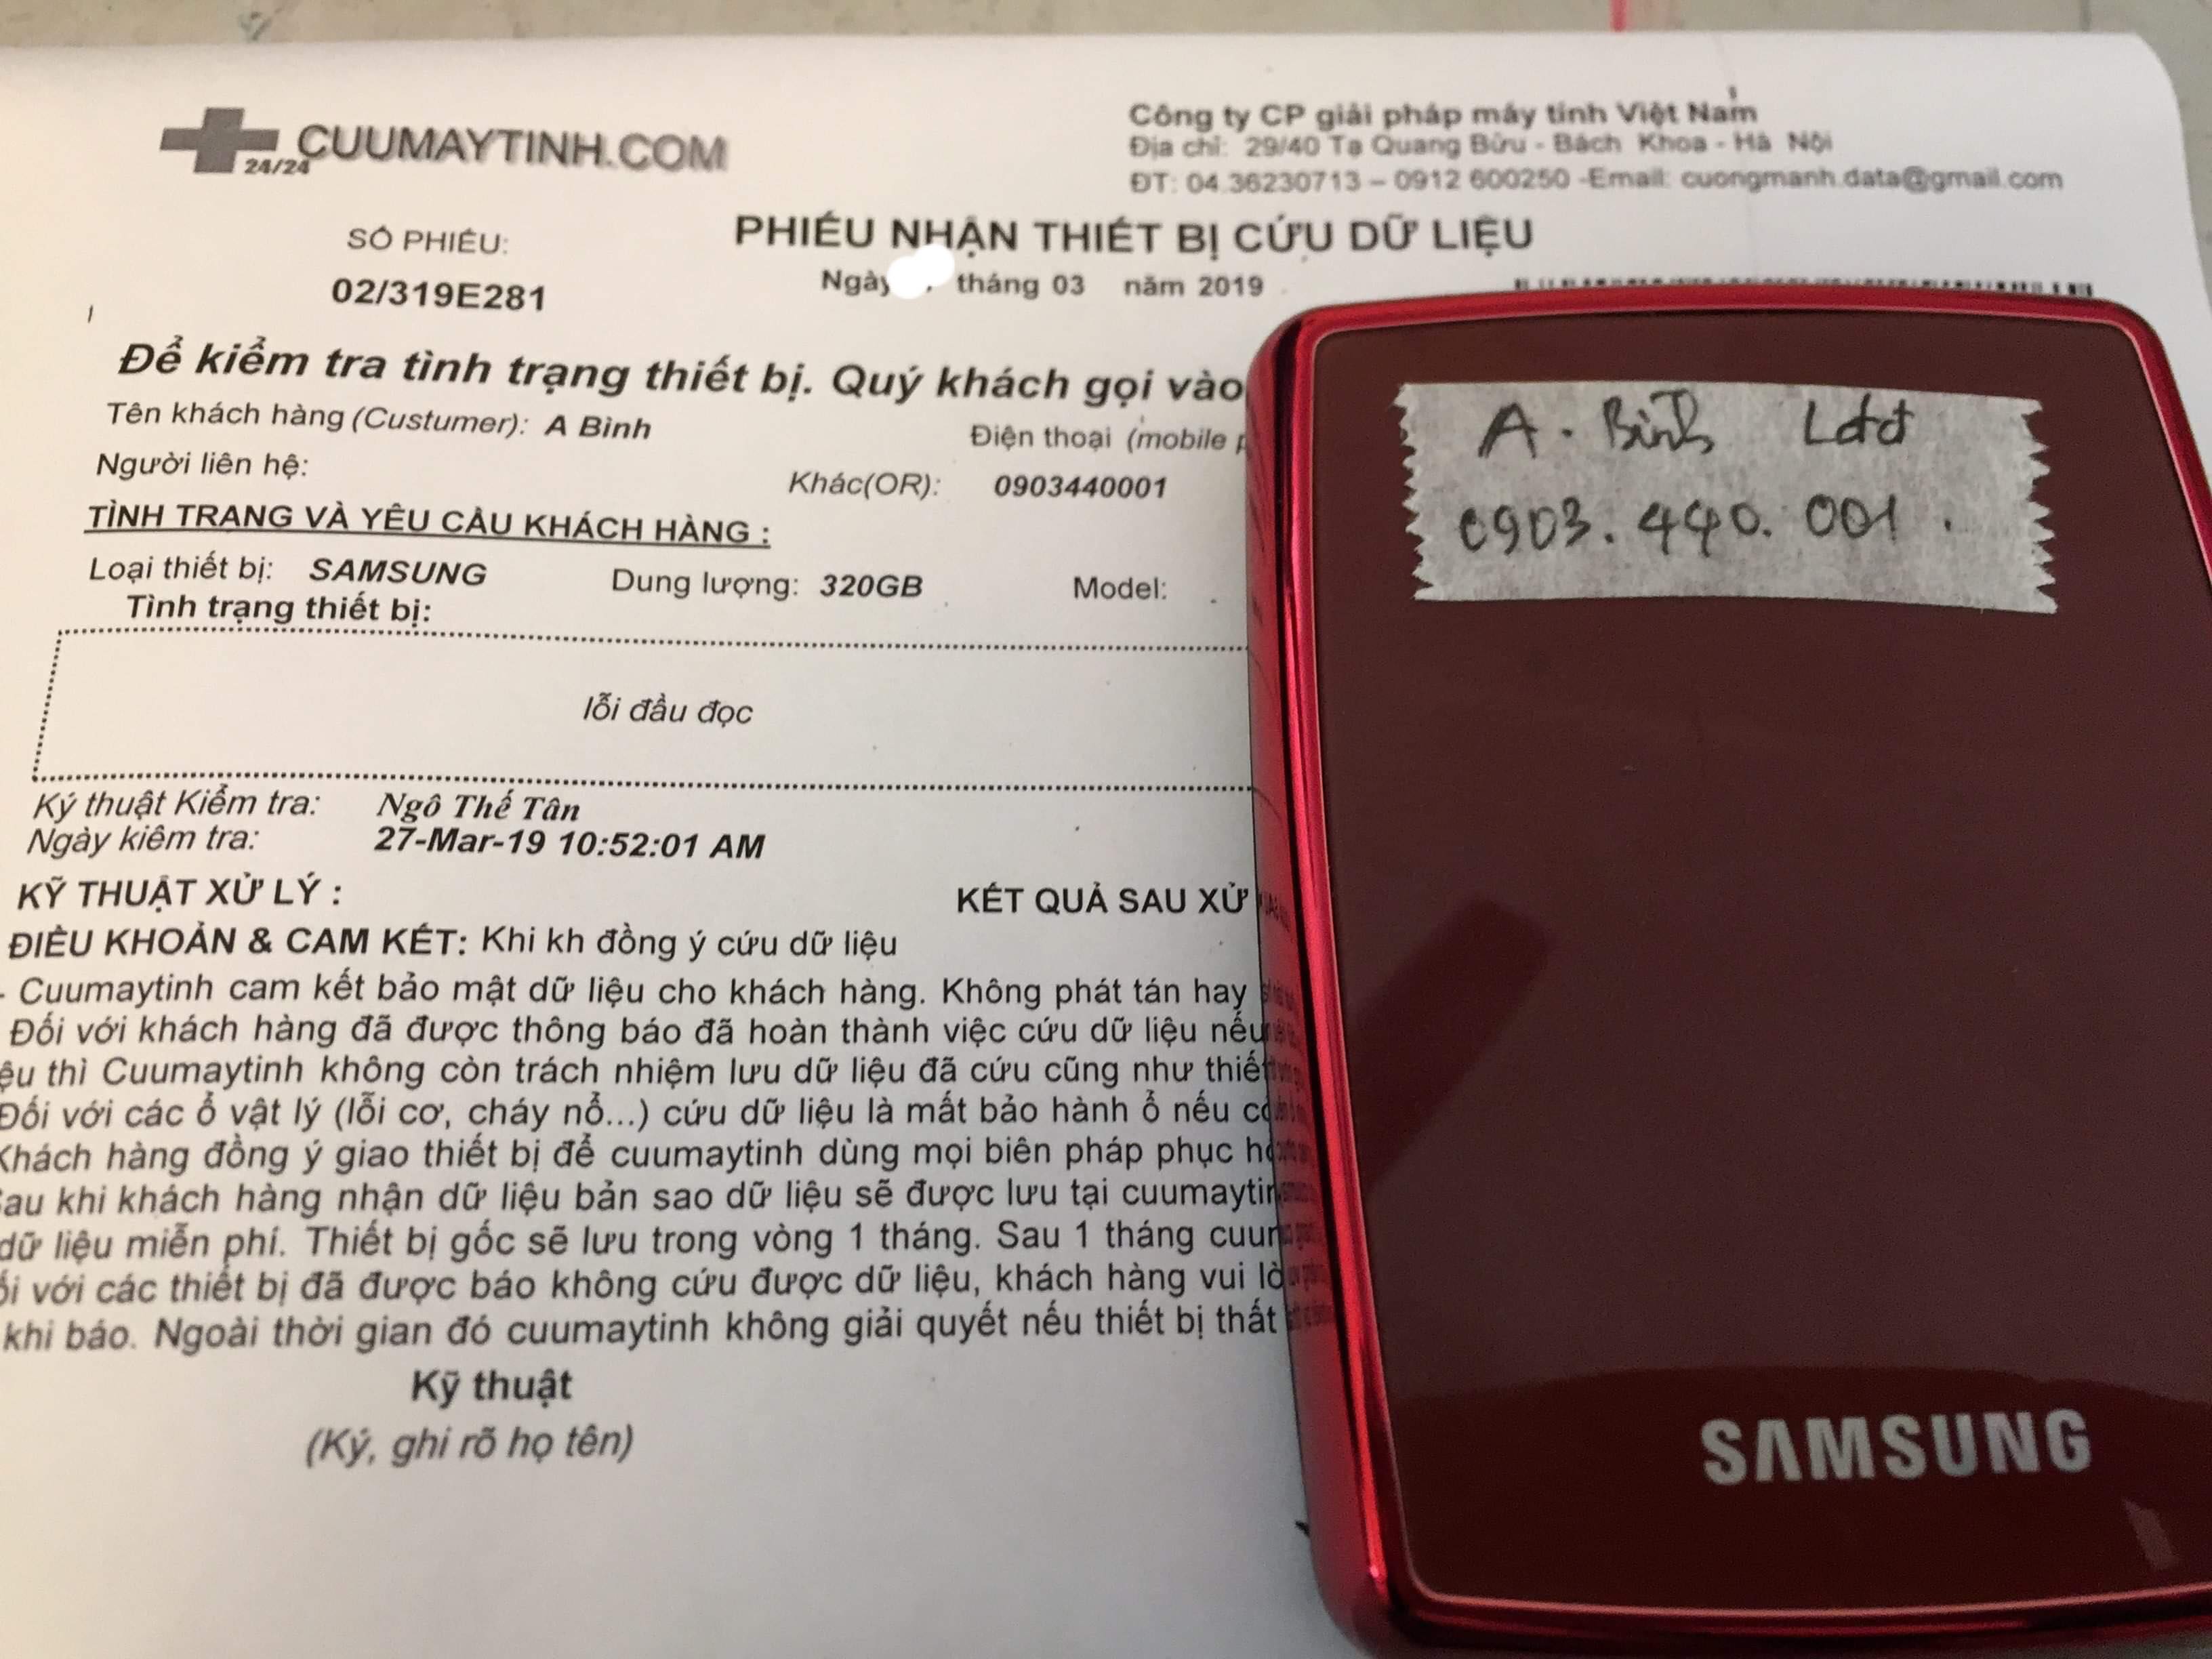 Cứu dữ liệu ổ cứng Samsung 320GB lỗi đầu đọc 29/03/2019 - cuumaytinh